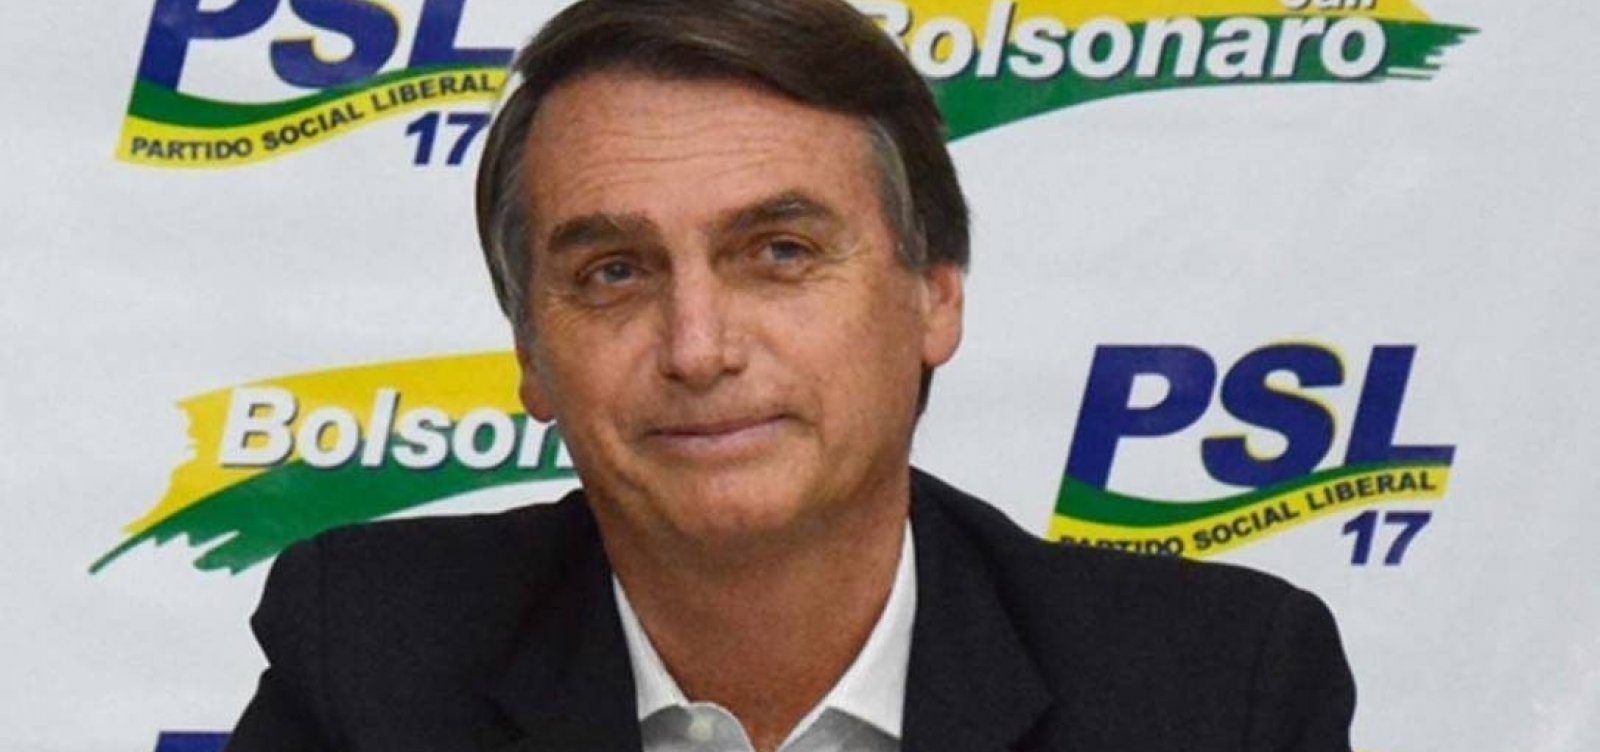 Em resposta a Bolsonaro, PSL pede auditoria em contas presidenciais